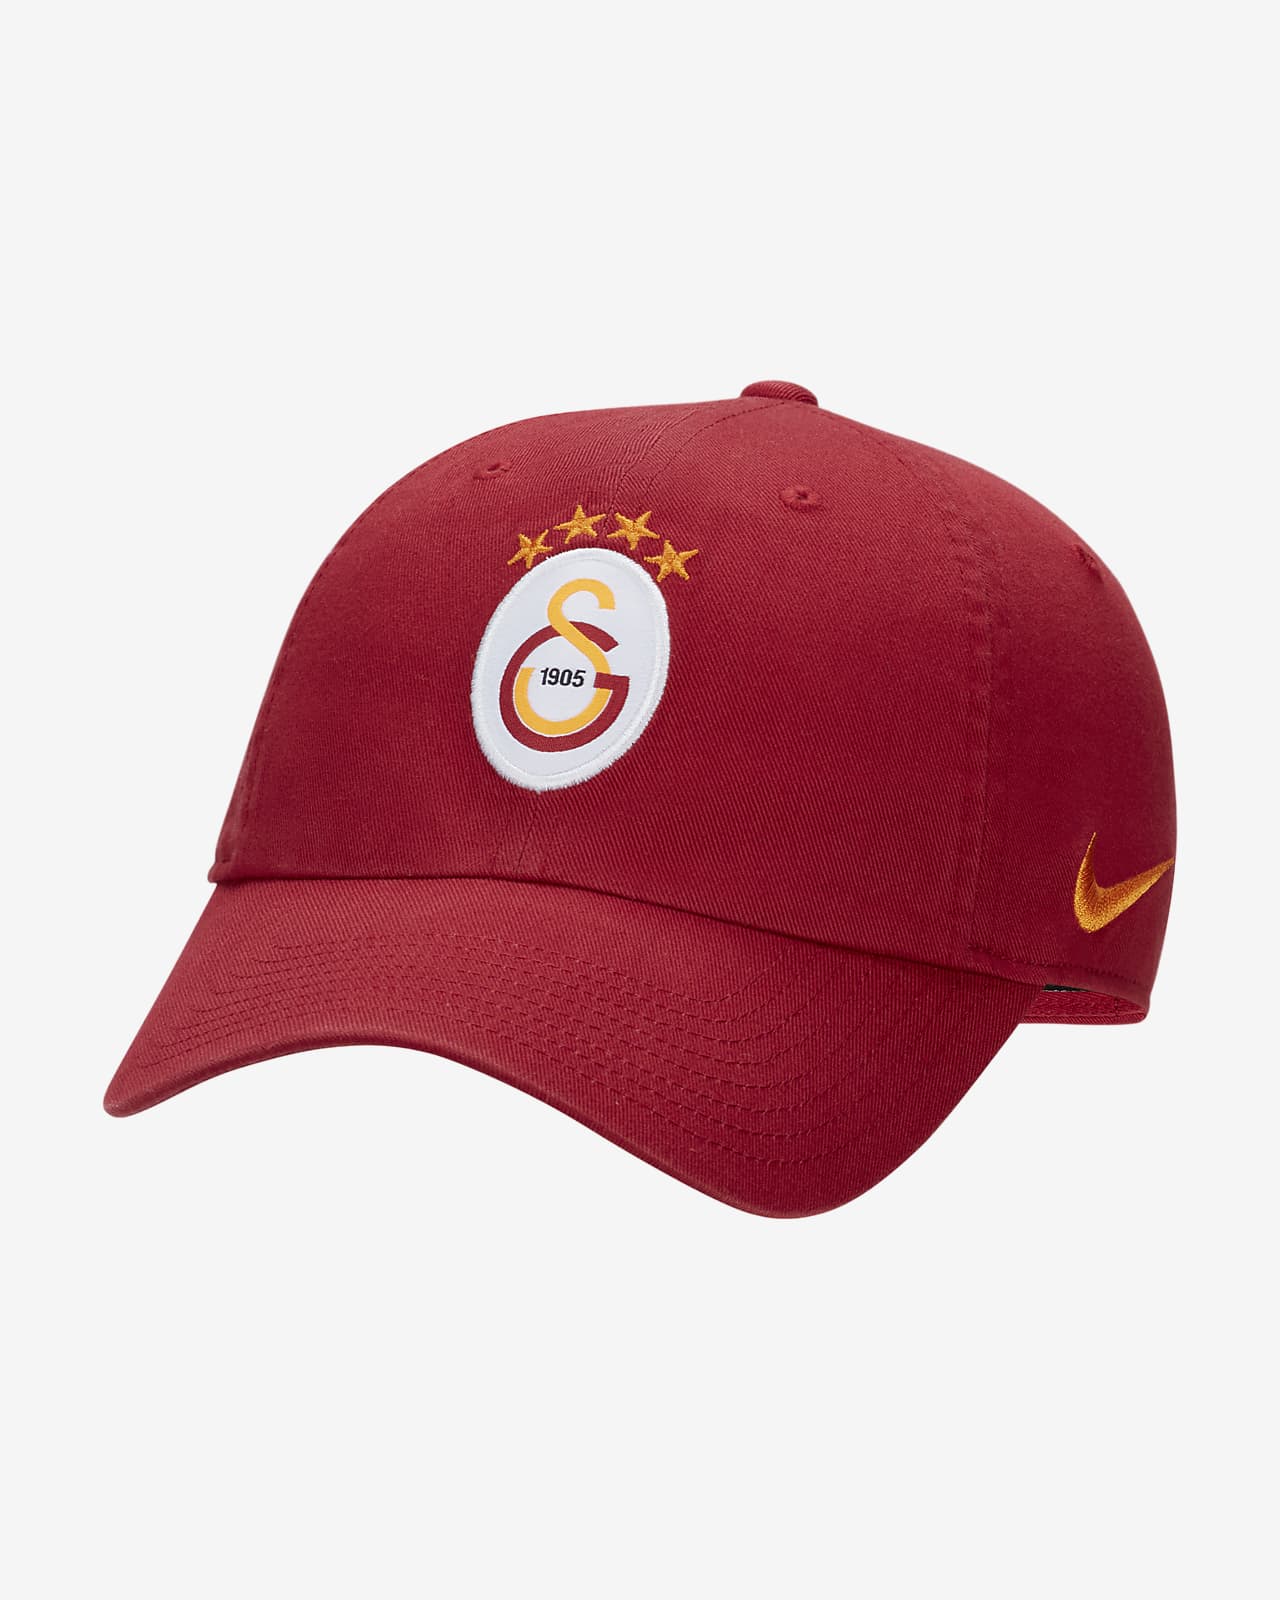 tarwe Speels Ieder Galatasaray Heritage86 Hat. Nike LU